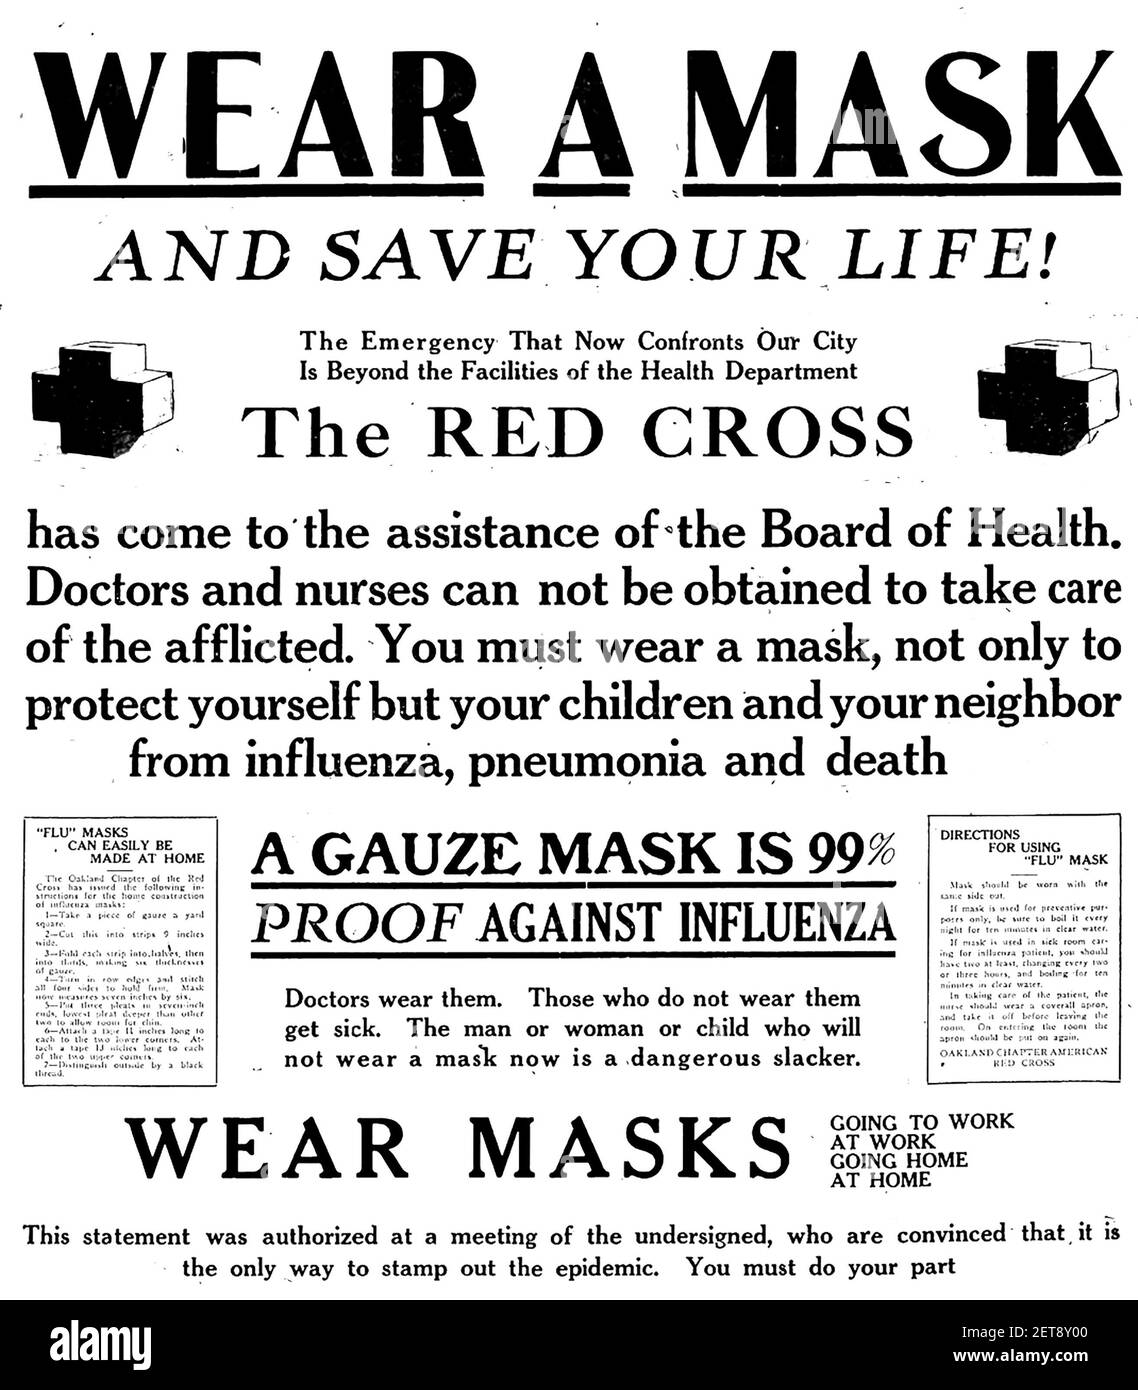 PANDEMIA DE GRIPE ESPAÑOLA 1918. Un cartel de la Cruz Roja Americana que insta a usar máscaras Foto de stock